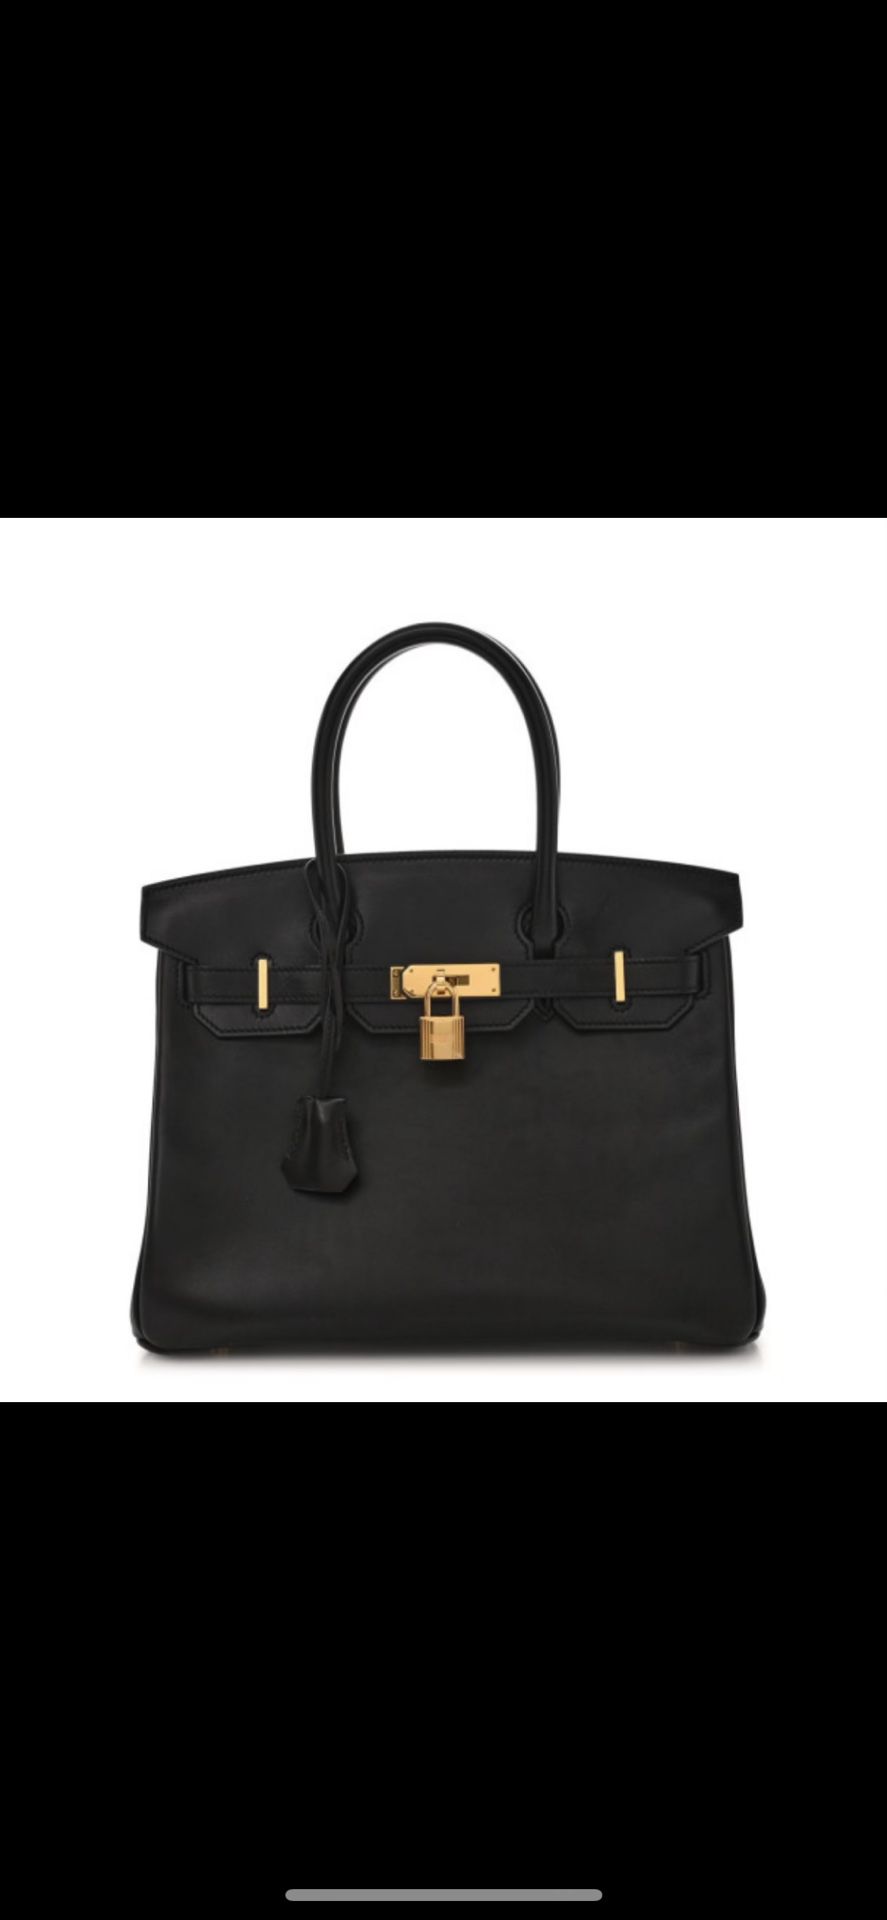 Hermes Birkin 30 bag black with gold hardware